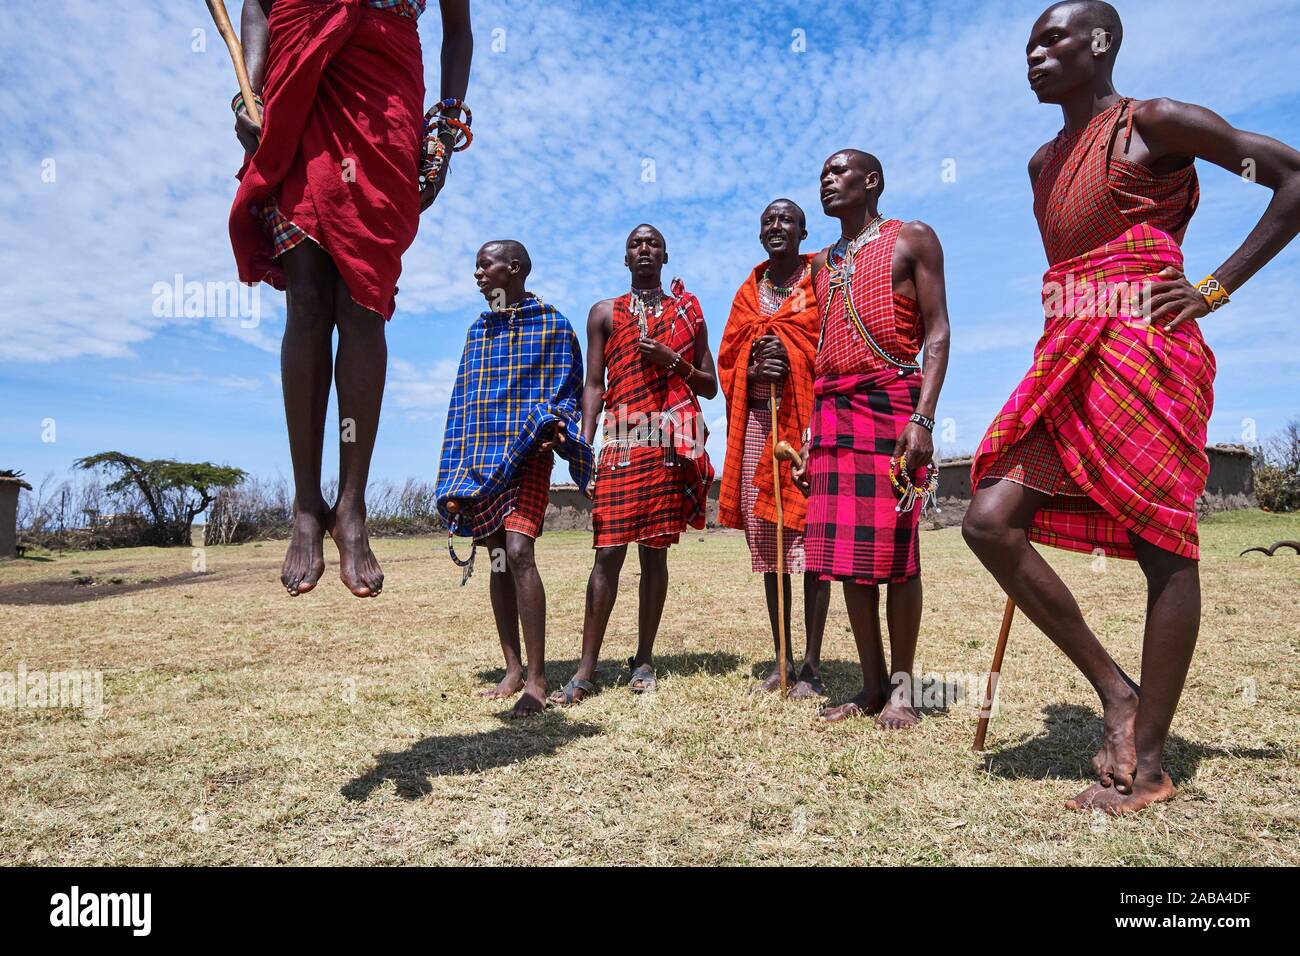 Young Maasai men performing a traditional jumping dance, Masai Mara National Reserve, Kenya. Stock Photo